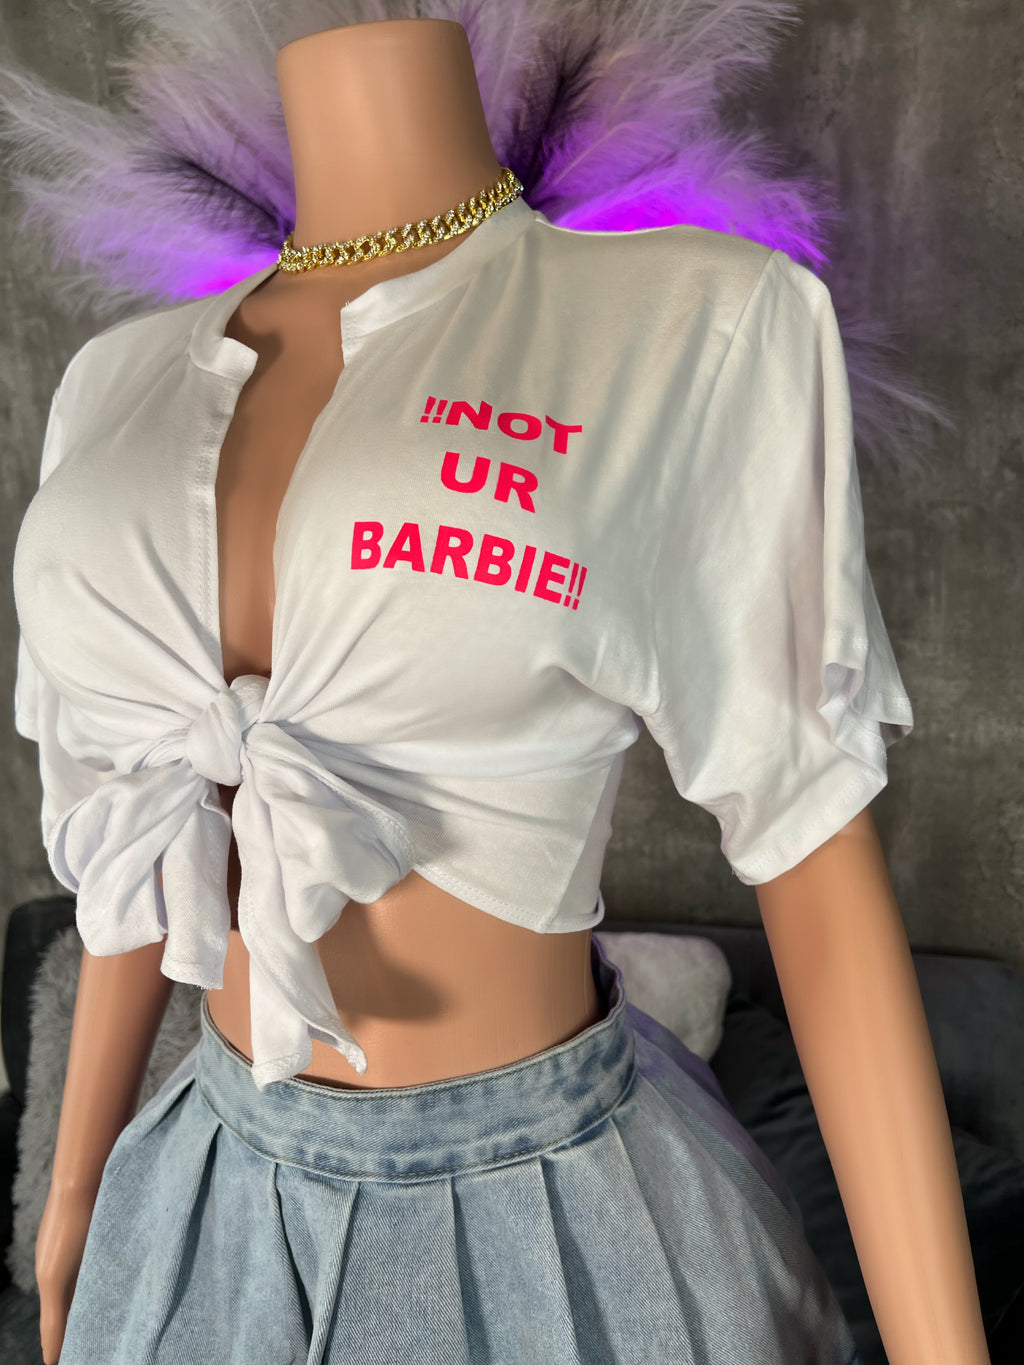 Not Ur Barbie